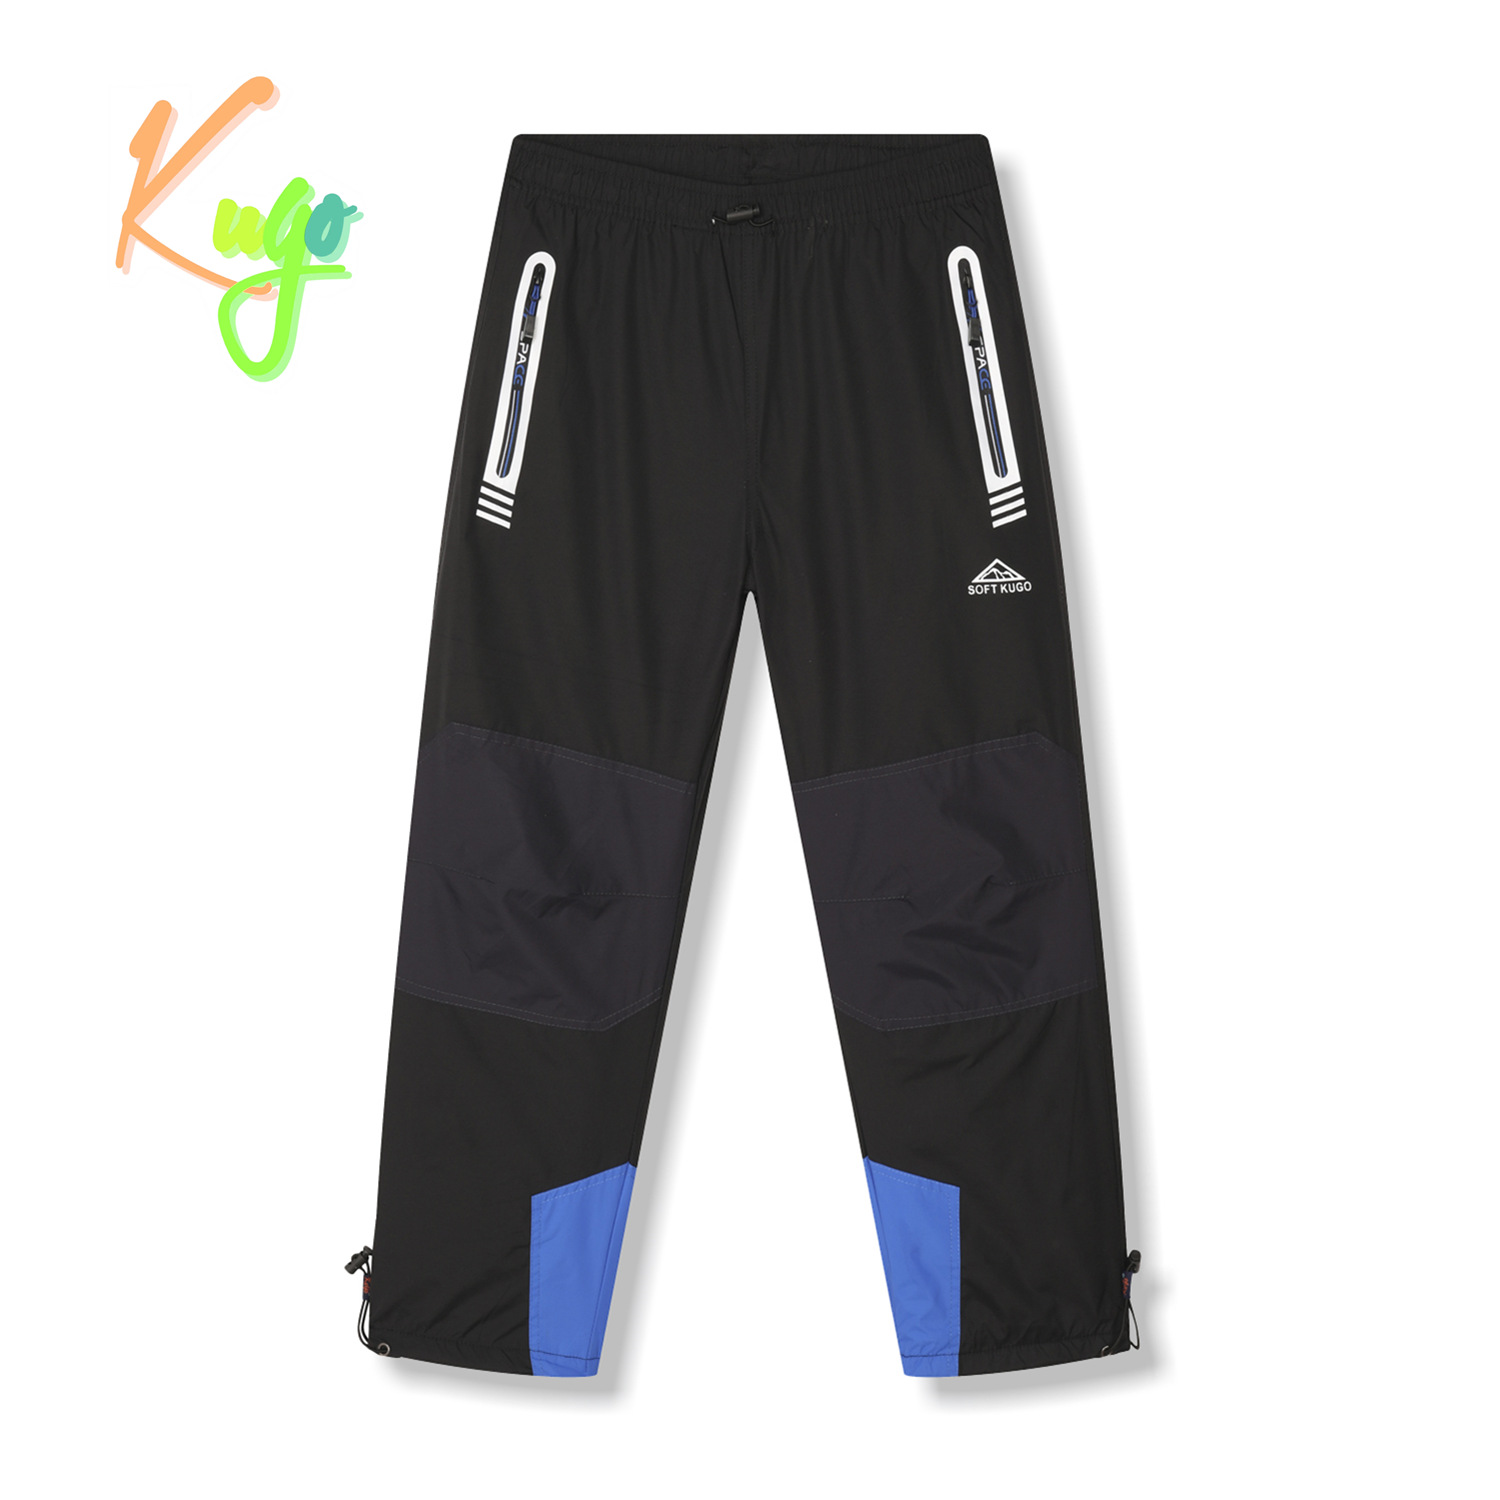 Chlapecké šusťákové kalhoty, zateplené - KUGO DK7135, černá/ modrá aplikace Barva: Černá, Velikost: 140